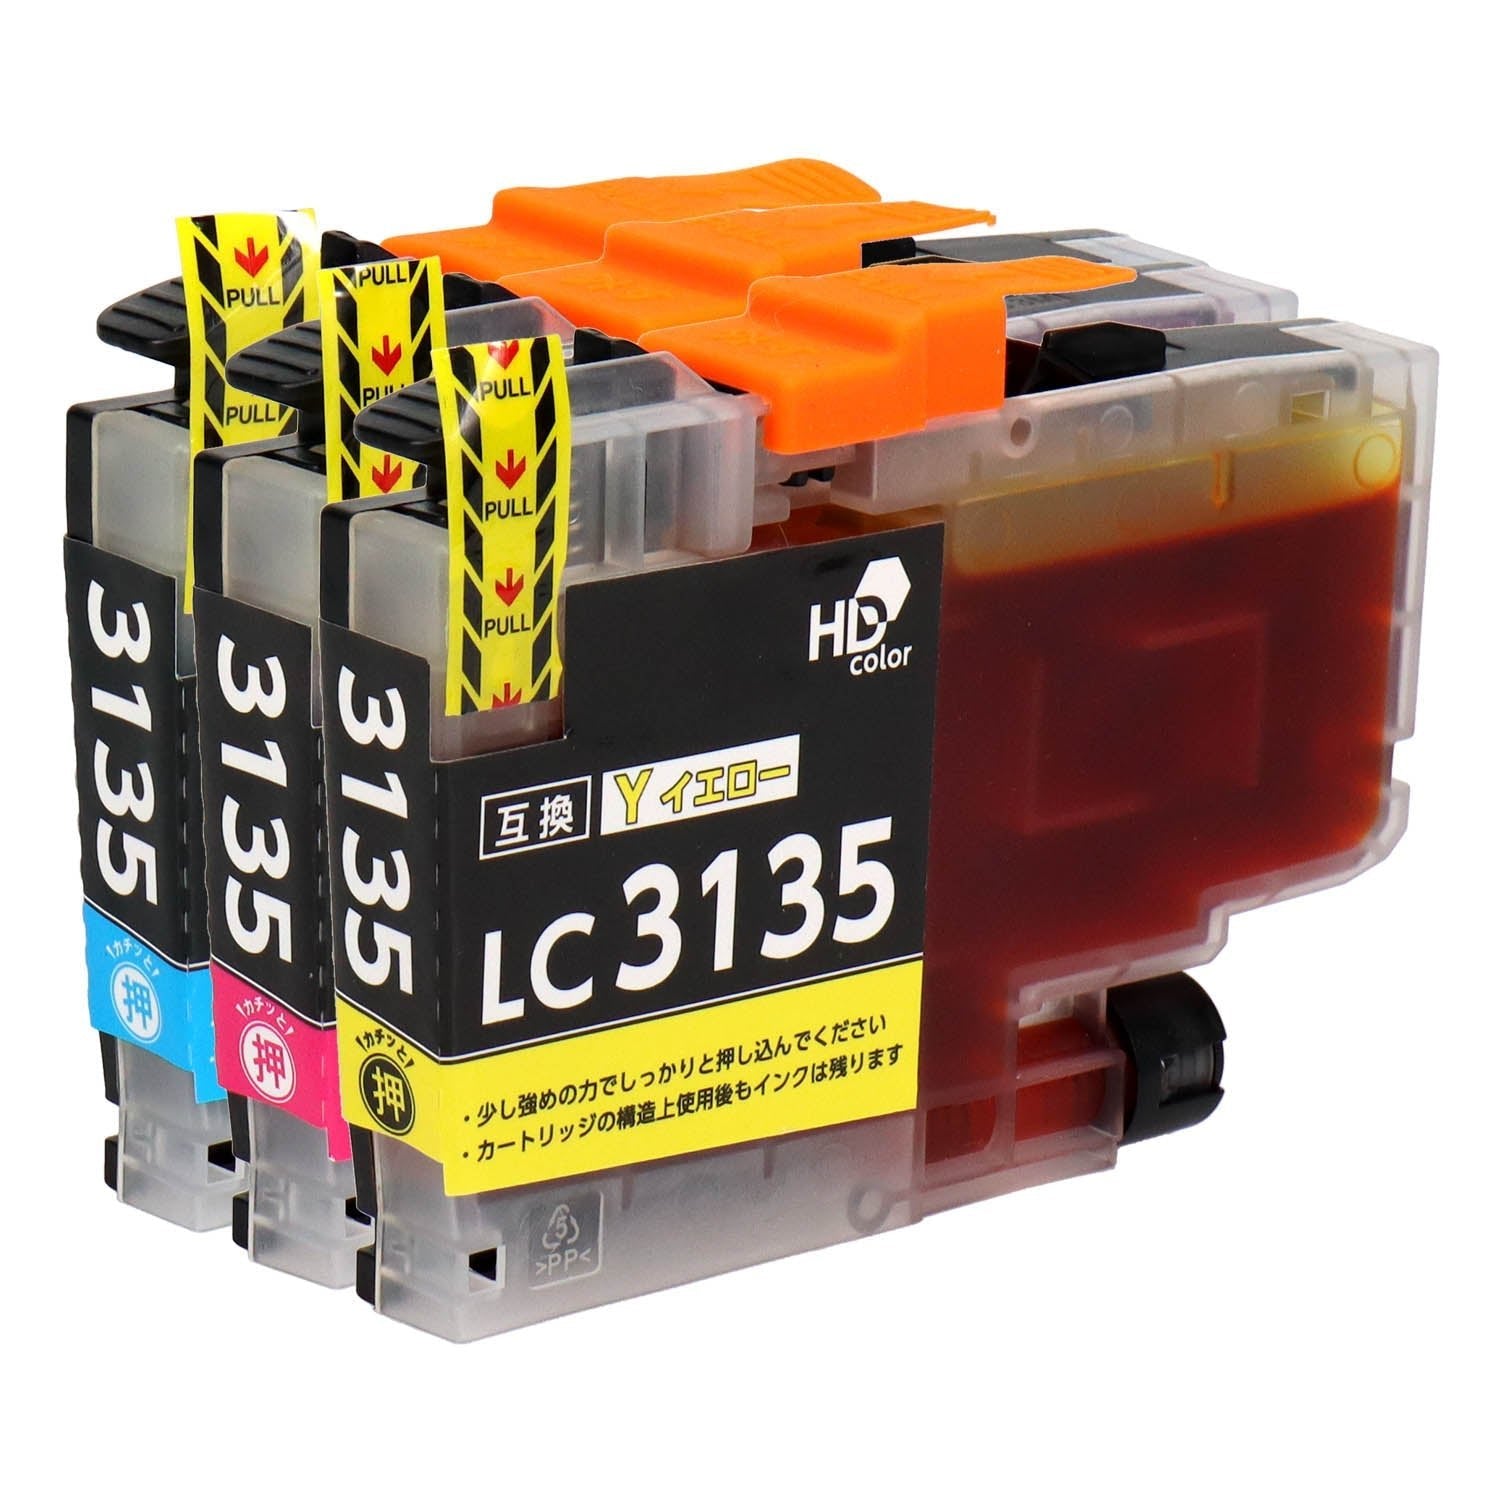 ブラザー用 LC3135 互換インク カラー3色 超大容量